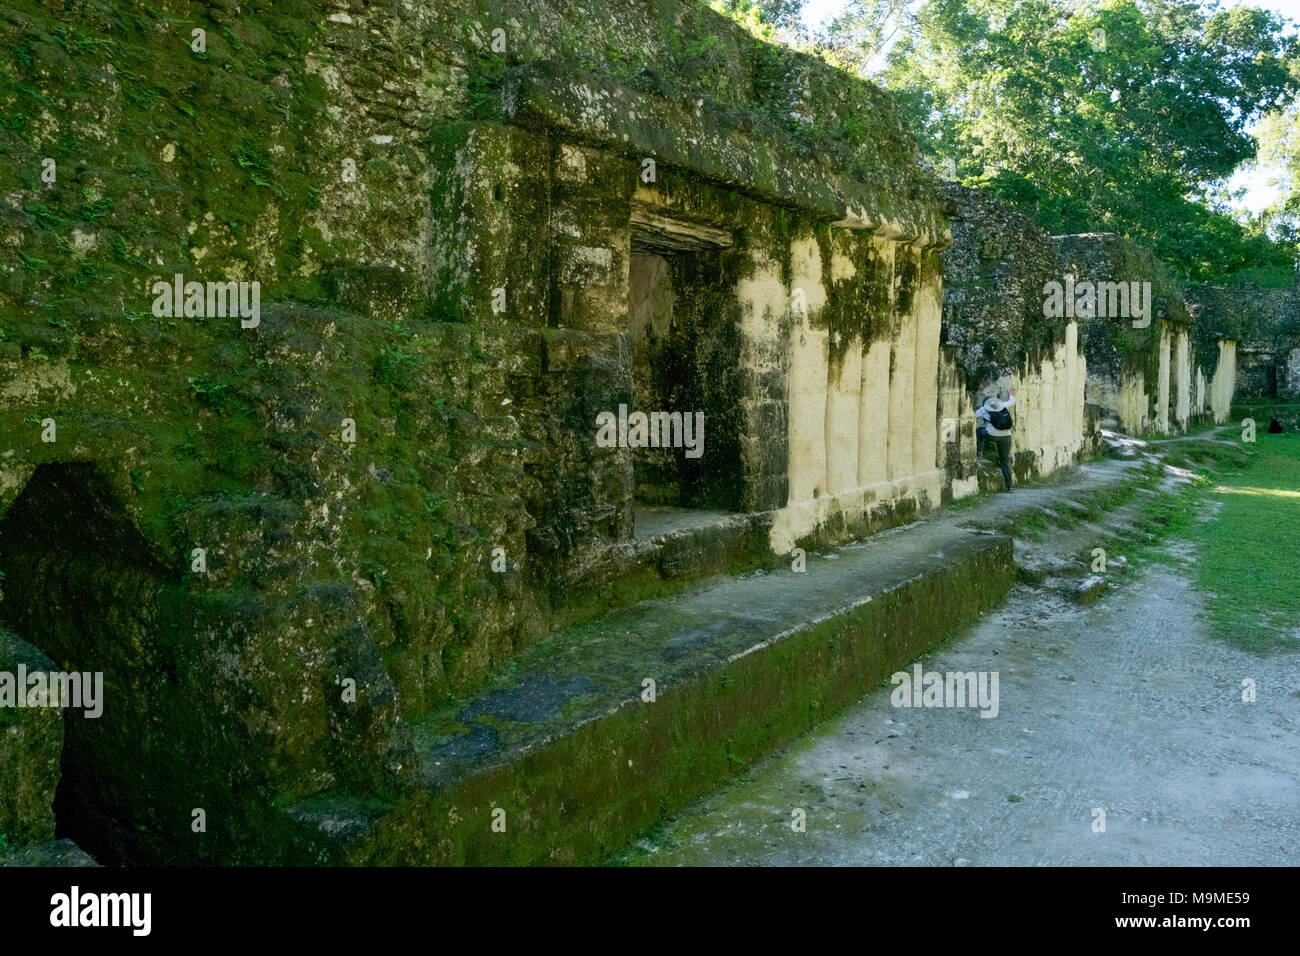 Detail of the ancient Mayan ruins of the Acanaladuras Palace at Tikal, Guatemala Stock Photo